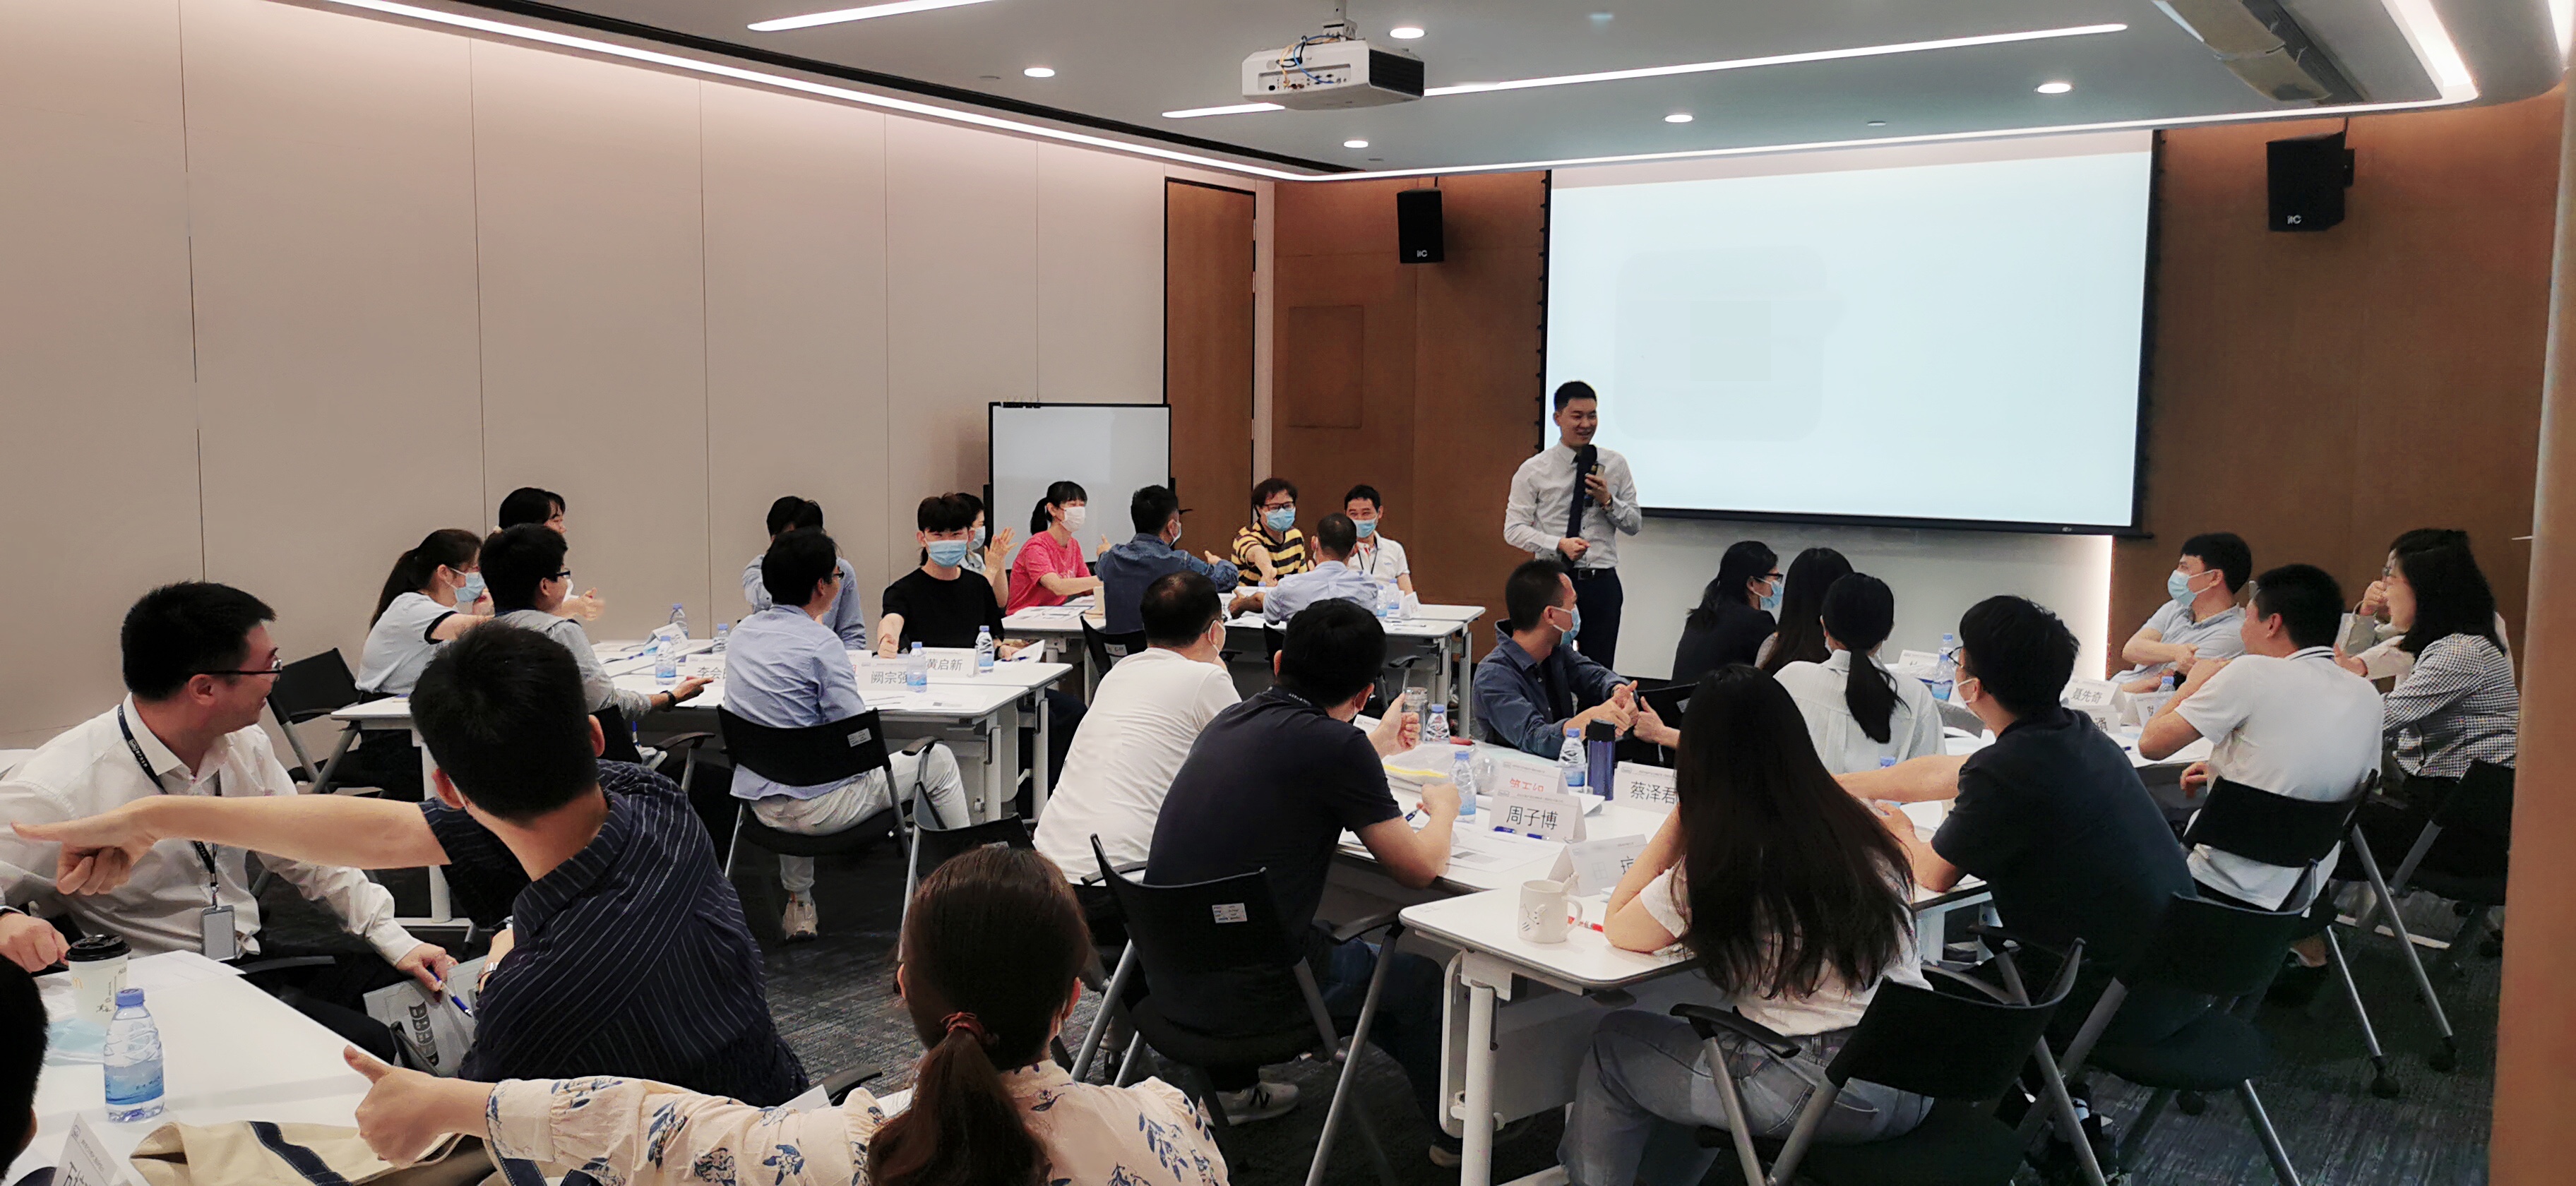 戴国强老师5月17日为 深圳市新产业生物医学公司讲授的第二期《课程开发与设计五步曲》课程圆满结束